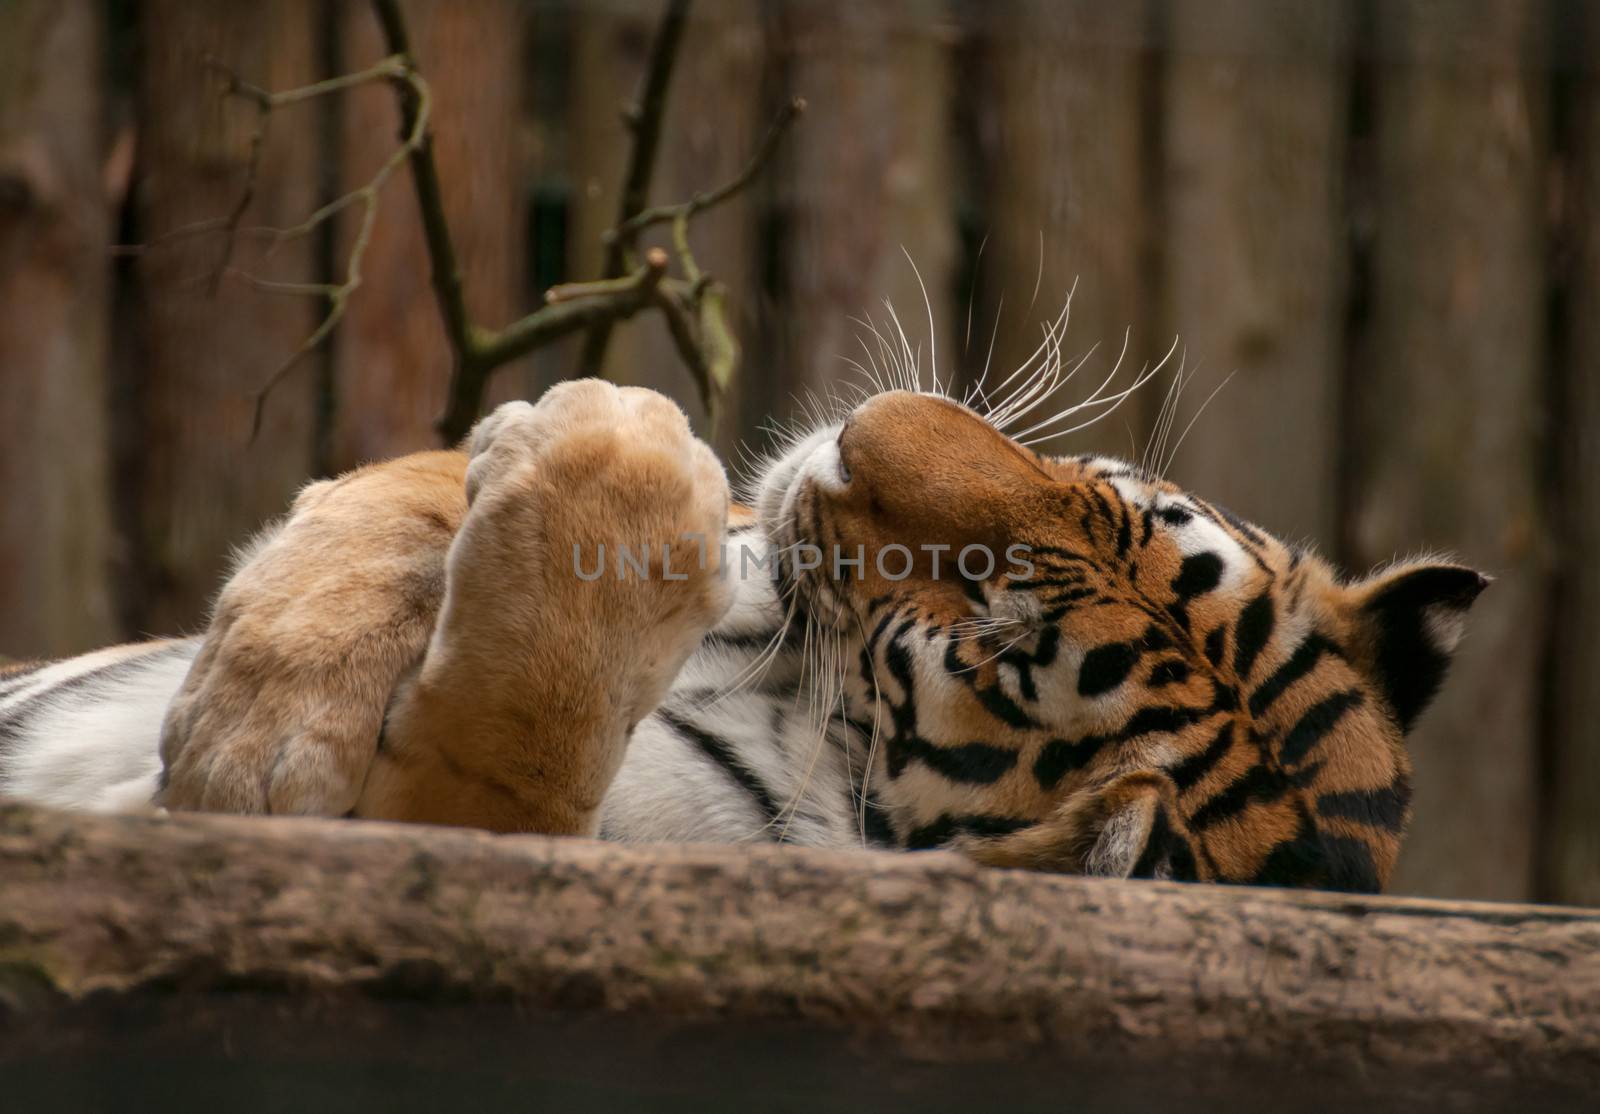 Panthera tigris by Gucio_55